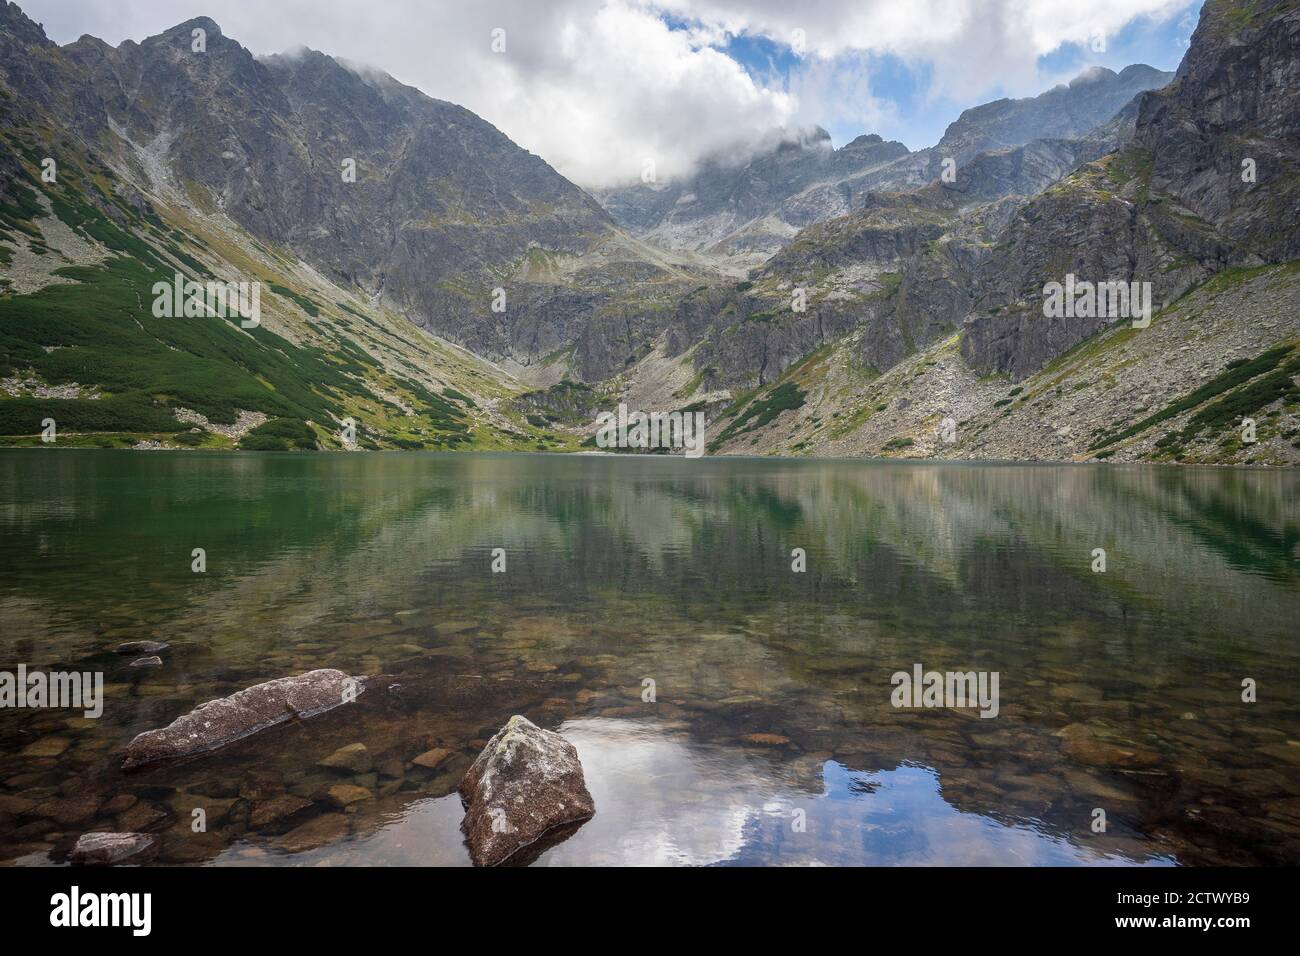 Gasienicowy Black Pond beau lac propre dans les Tatras polonaises. Banque D'Images